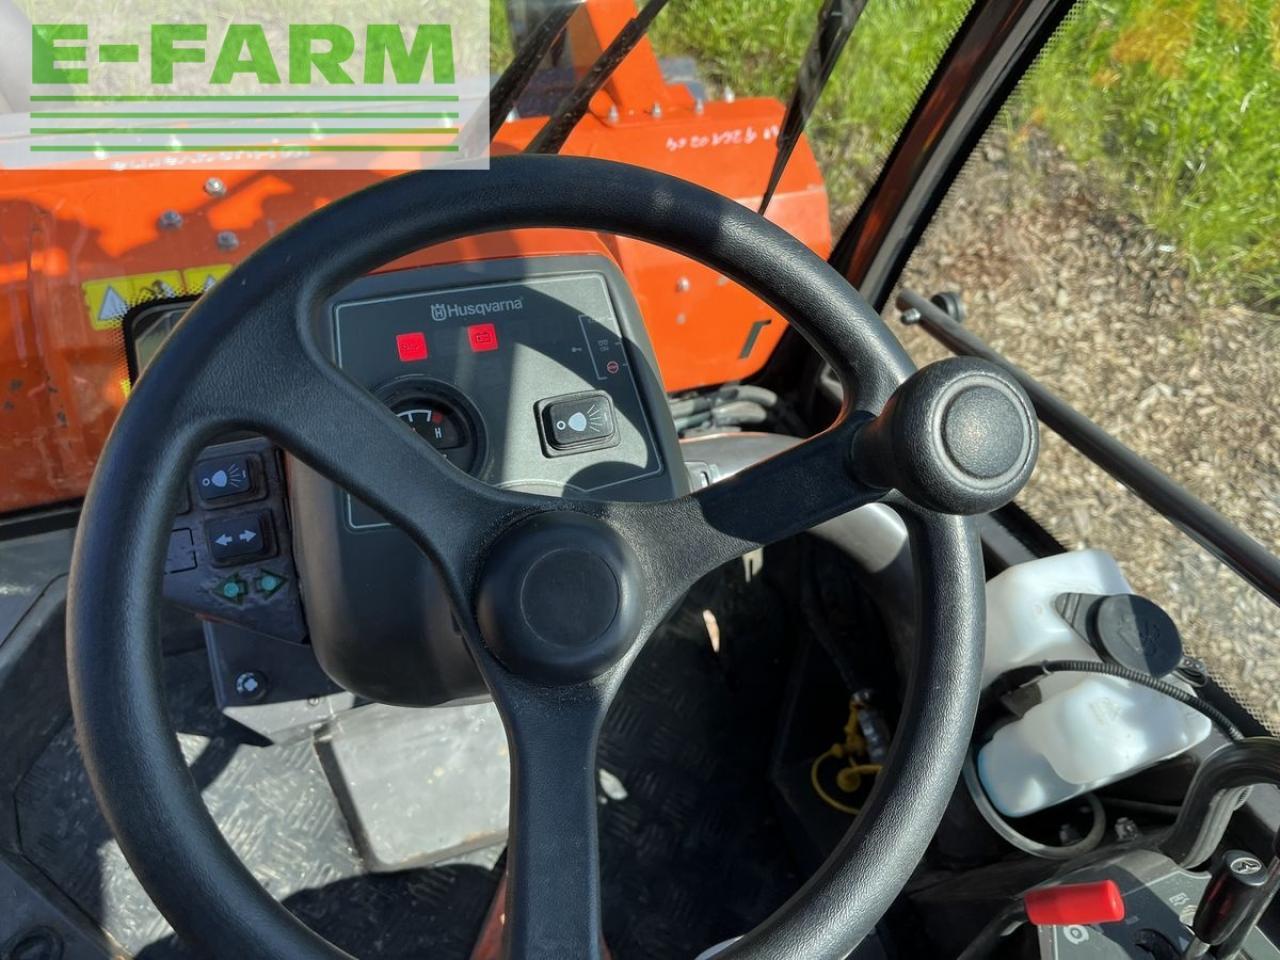 Farm tractor Husqvarna p525 d mit kabine und schleglmäher: picture 12